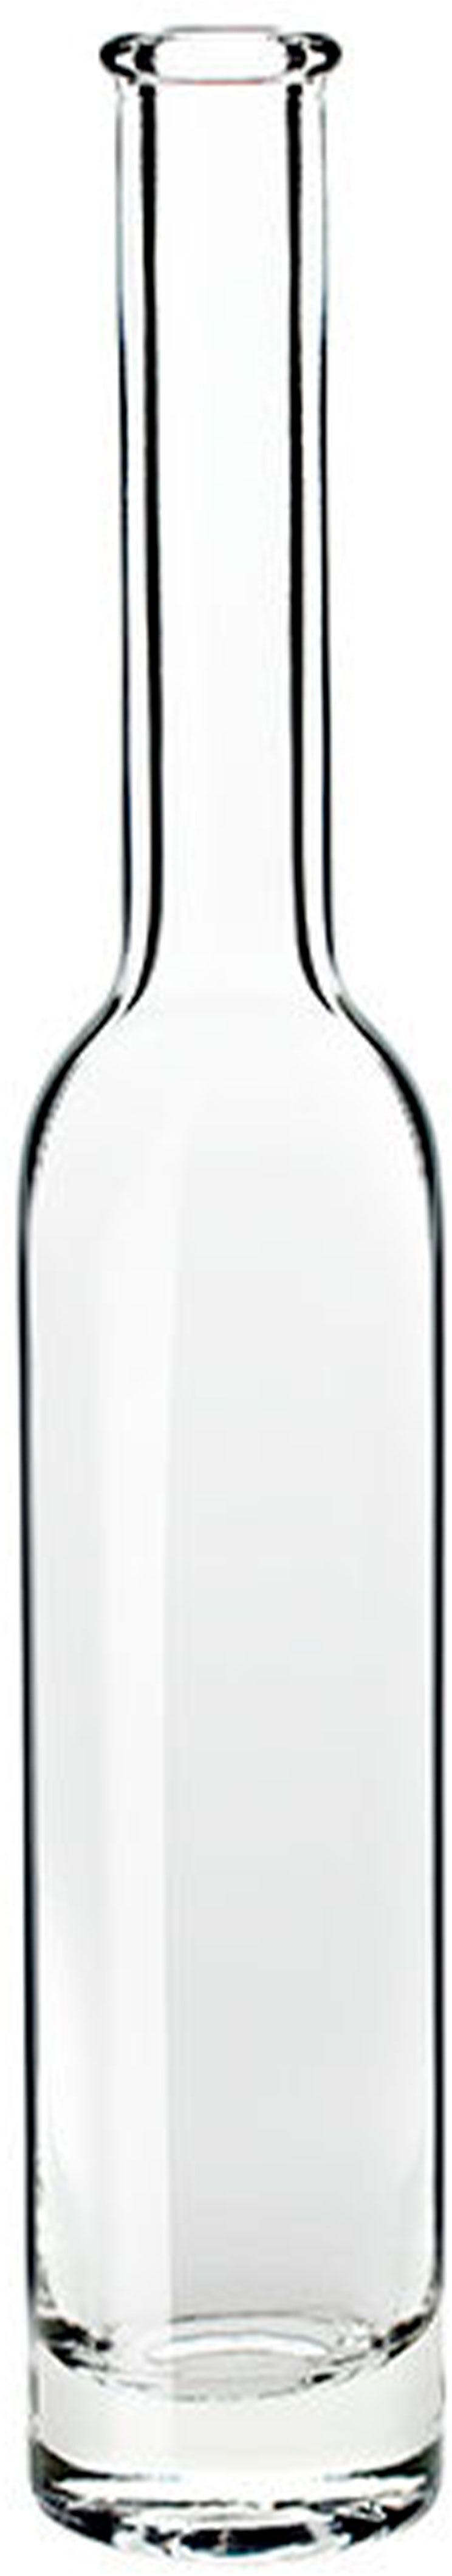 Bottiglia NUOVA  PLATIN 500 ml BG-Sughero